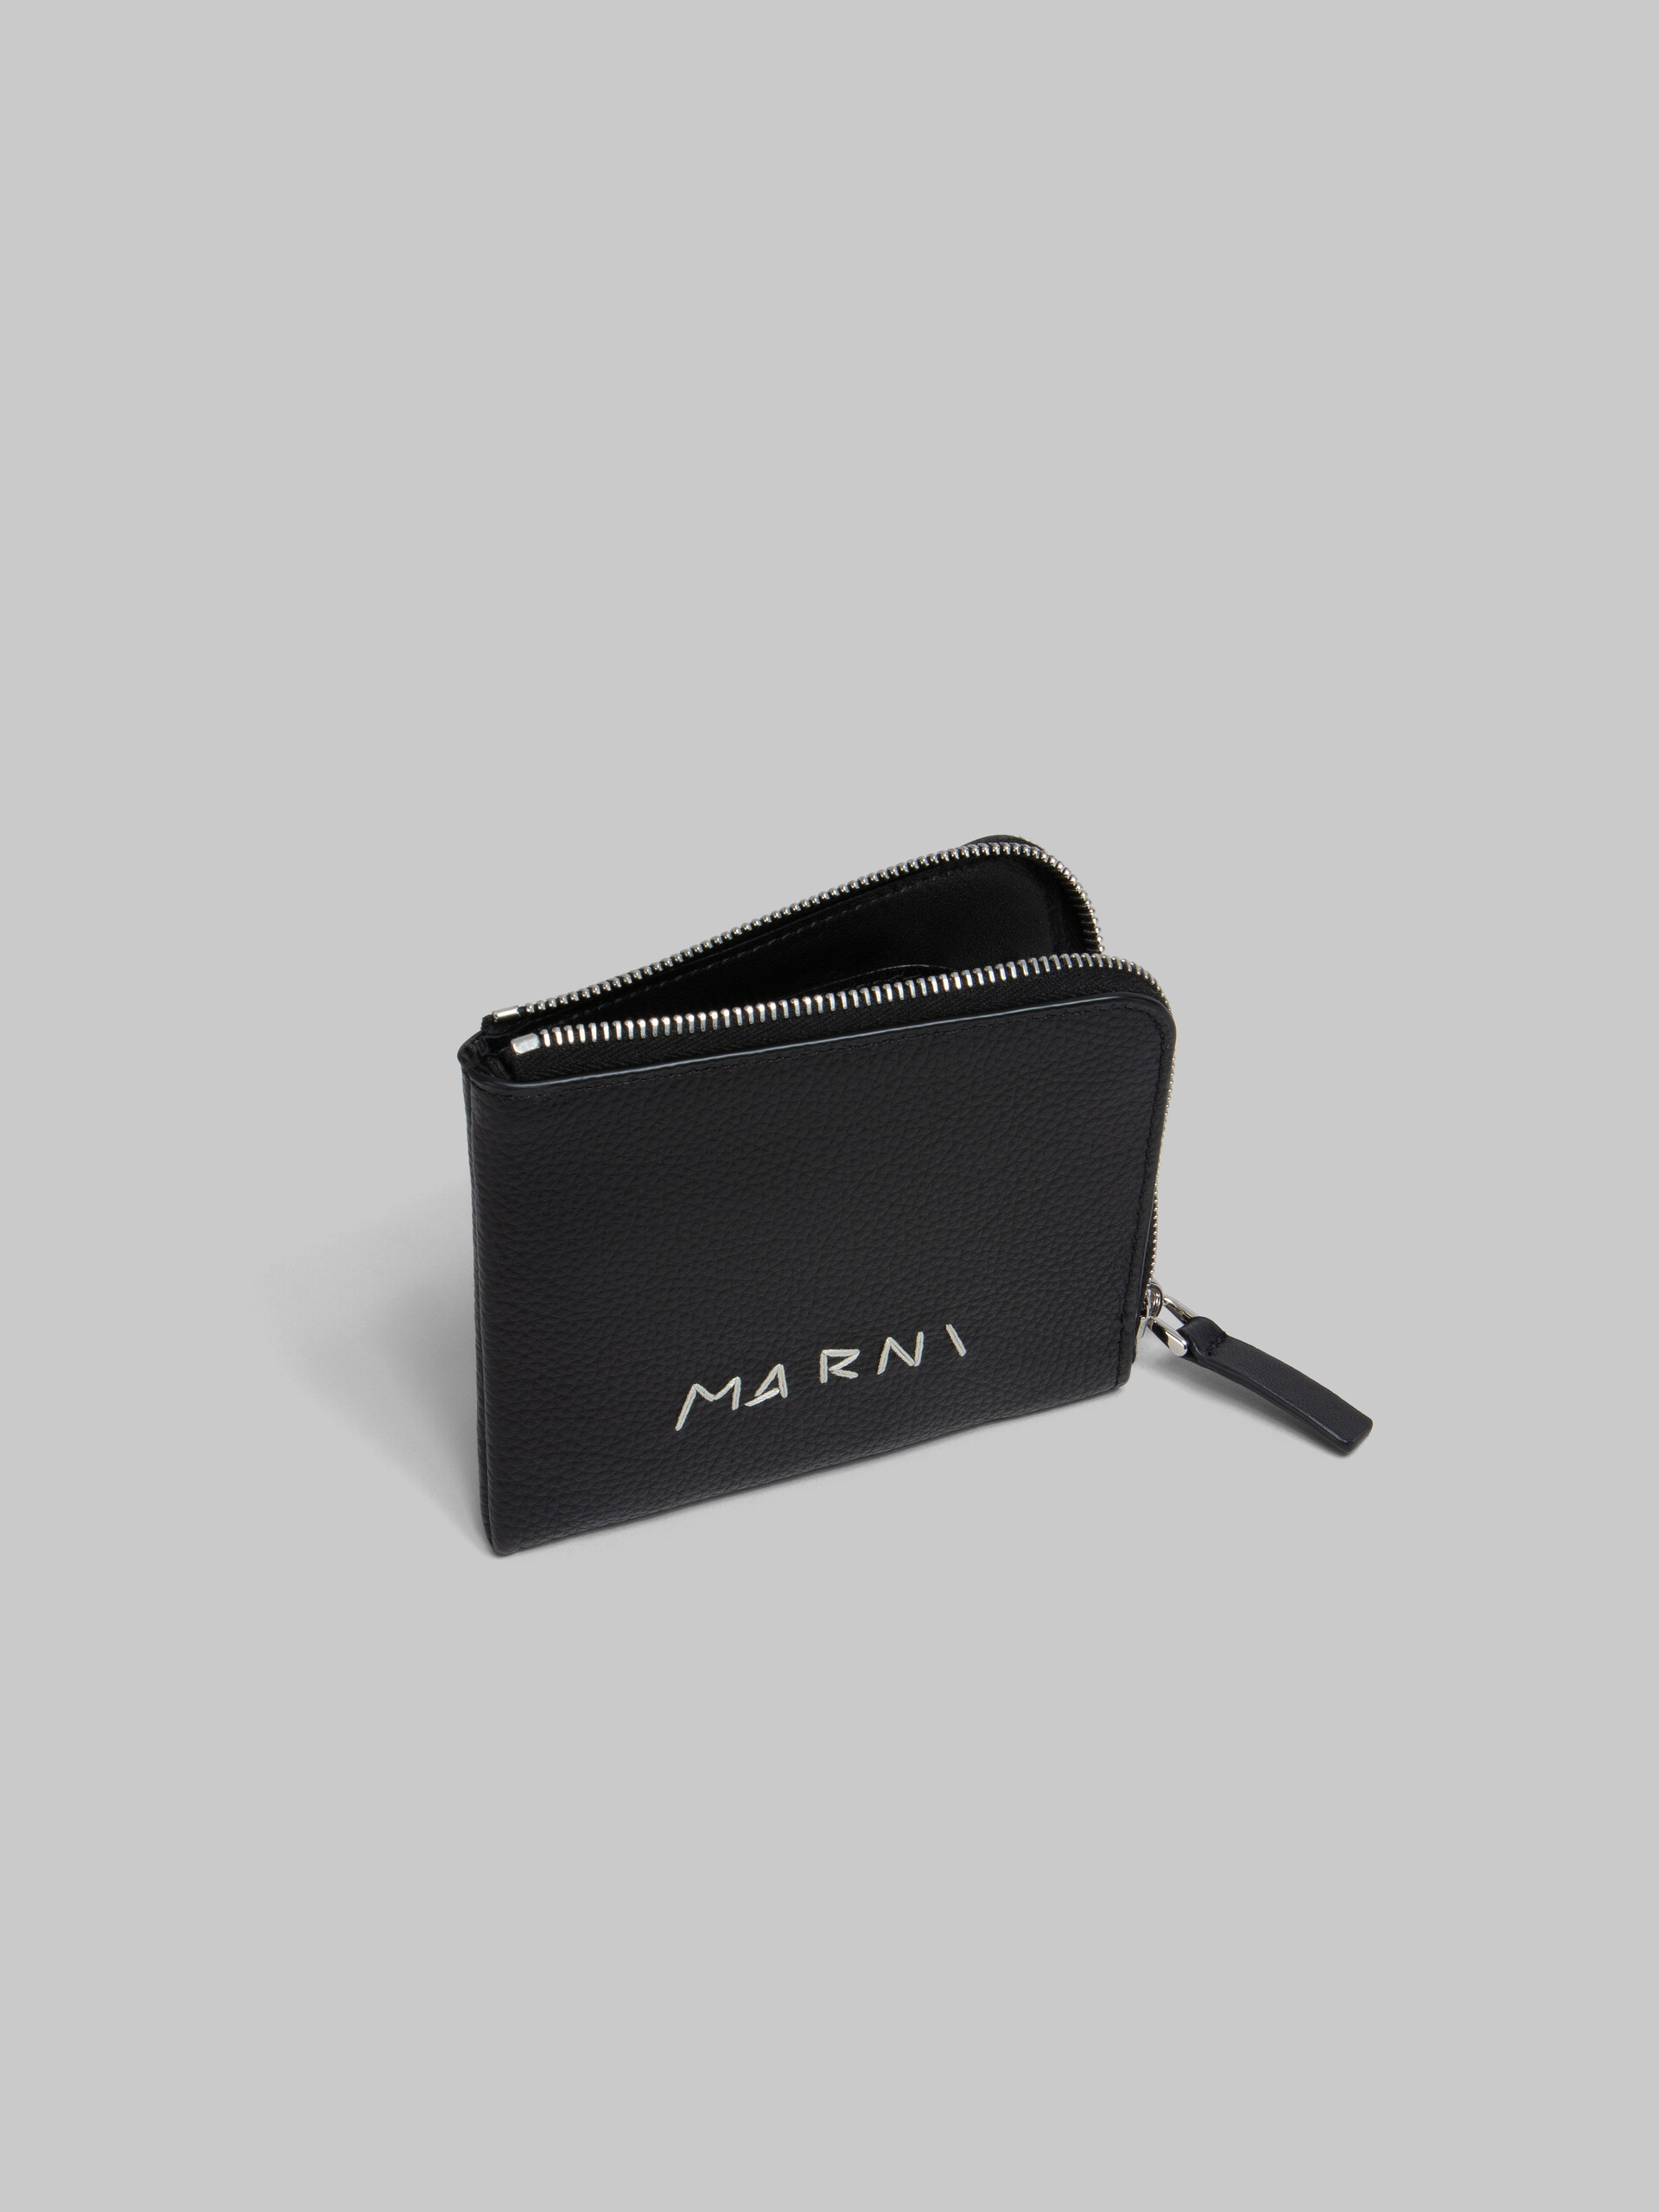 Schwarzes Lederportemonnaie mit Rundumreißverschluss und Marni-Flicken - Brieftaschen - Image 2